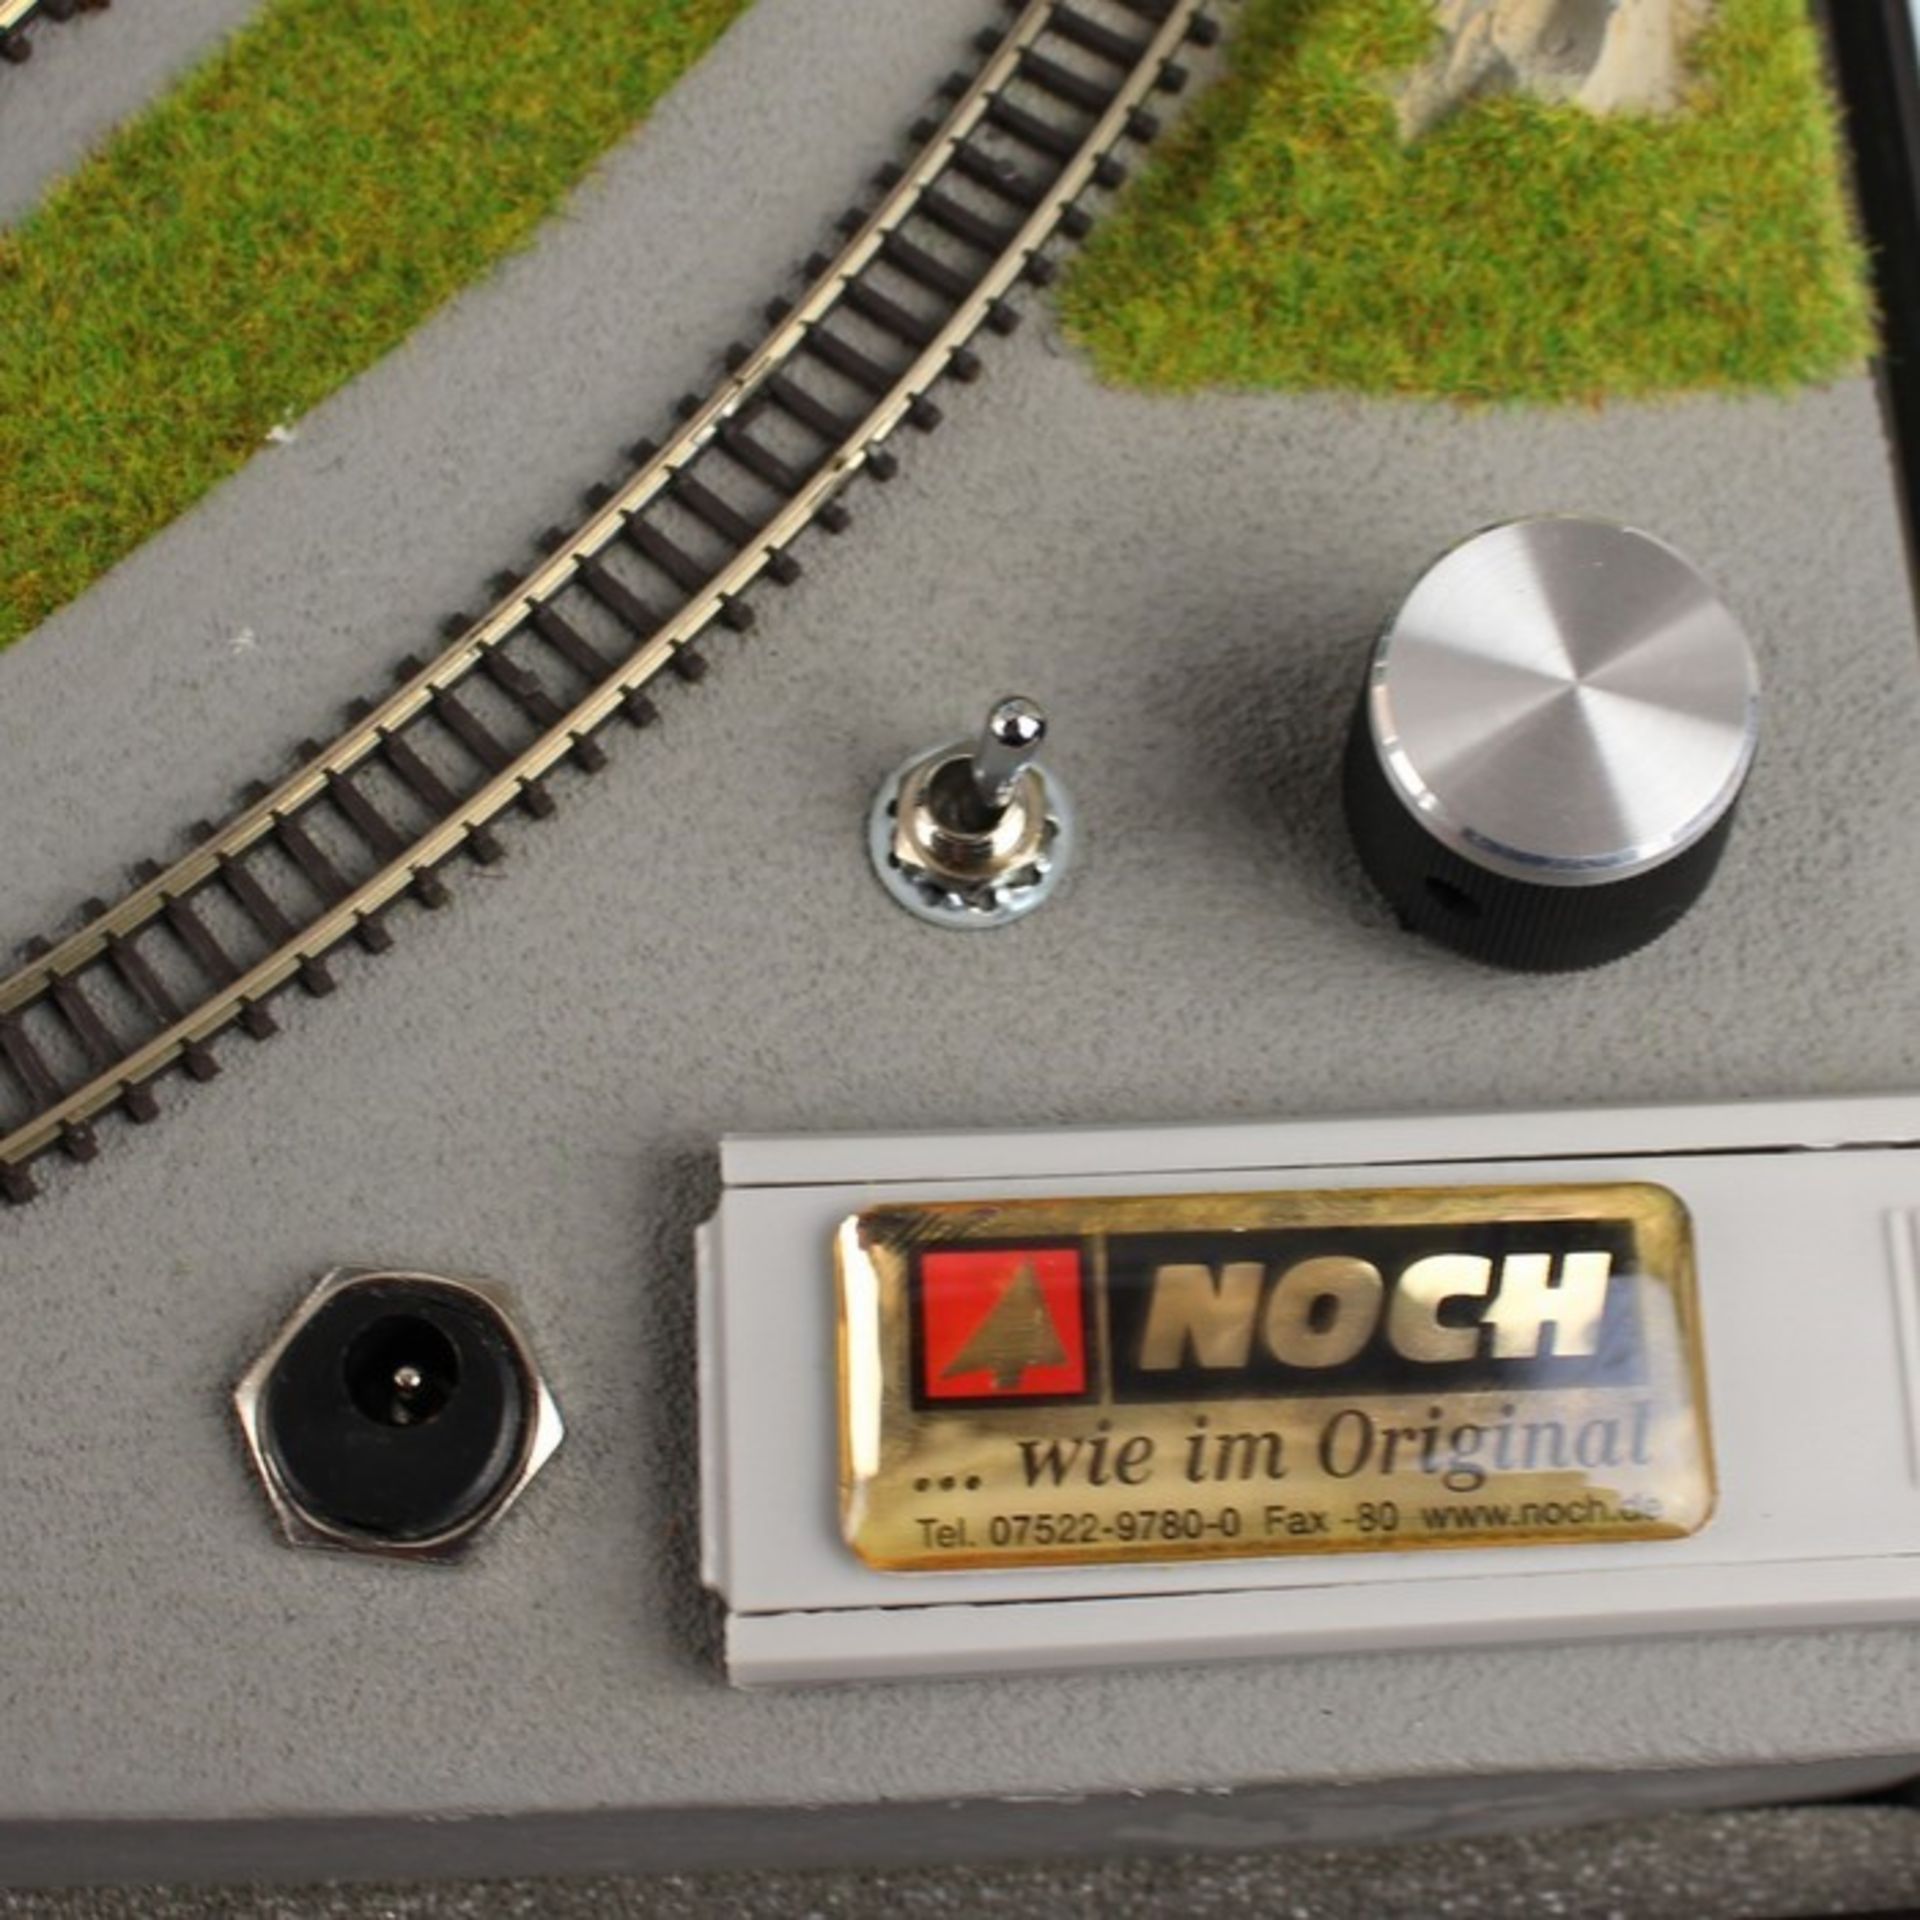 Märklin/Noch - EisenbahnzubehörNoch Railbag, Modellbahn-Koffer, Märklin mini-club Spur Z, " - Bild 2 aus 2